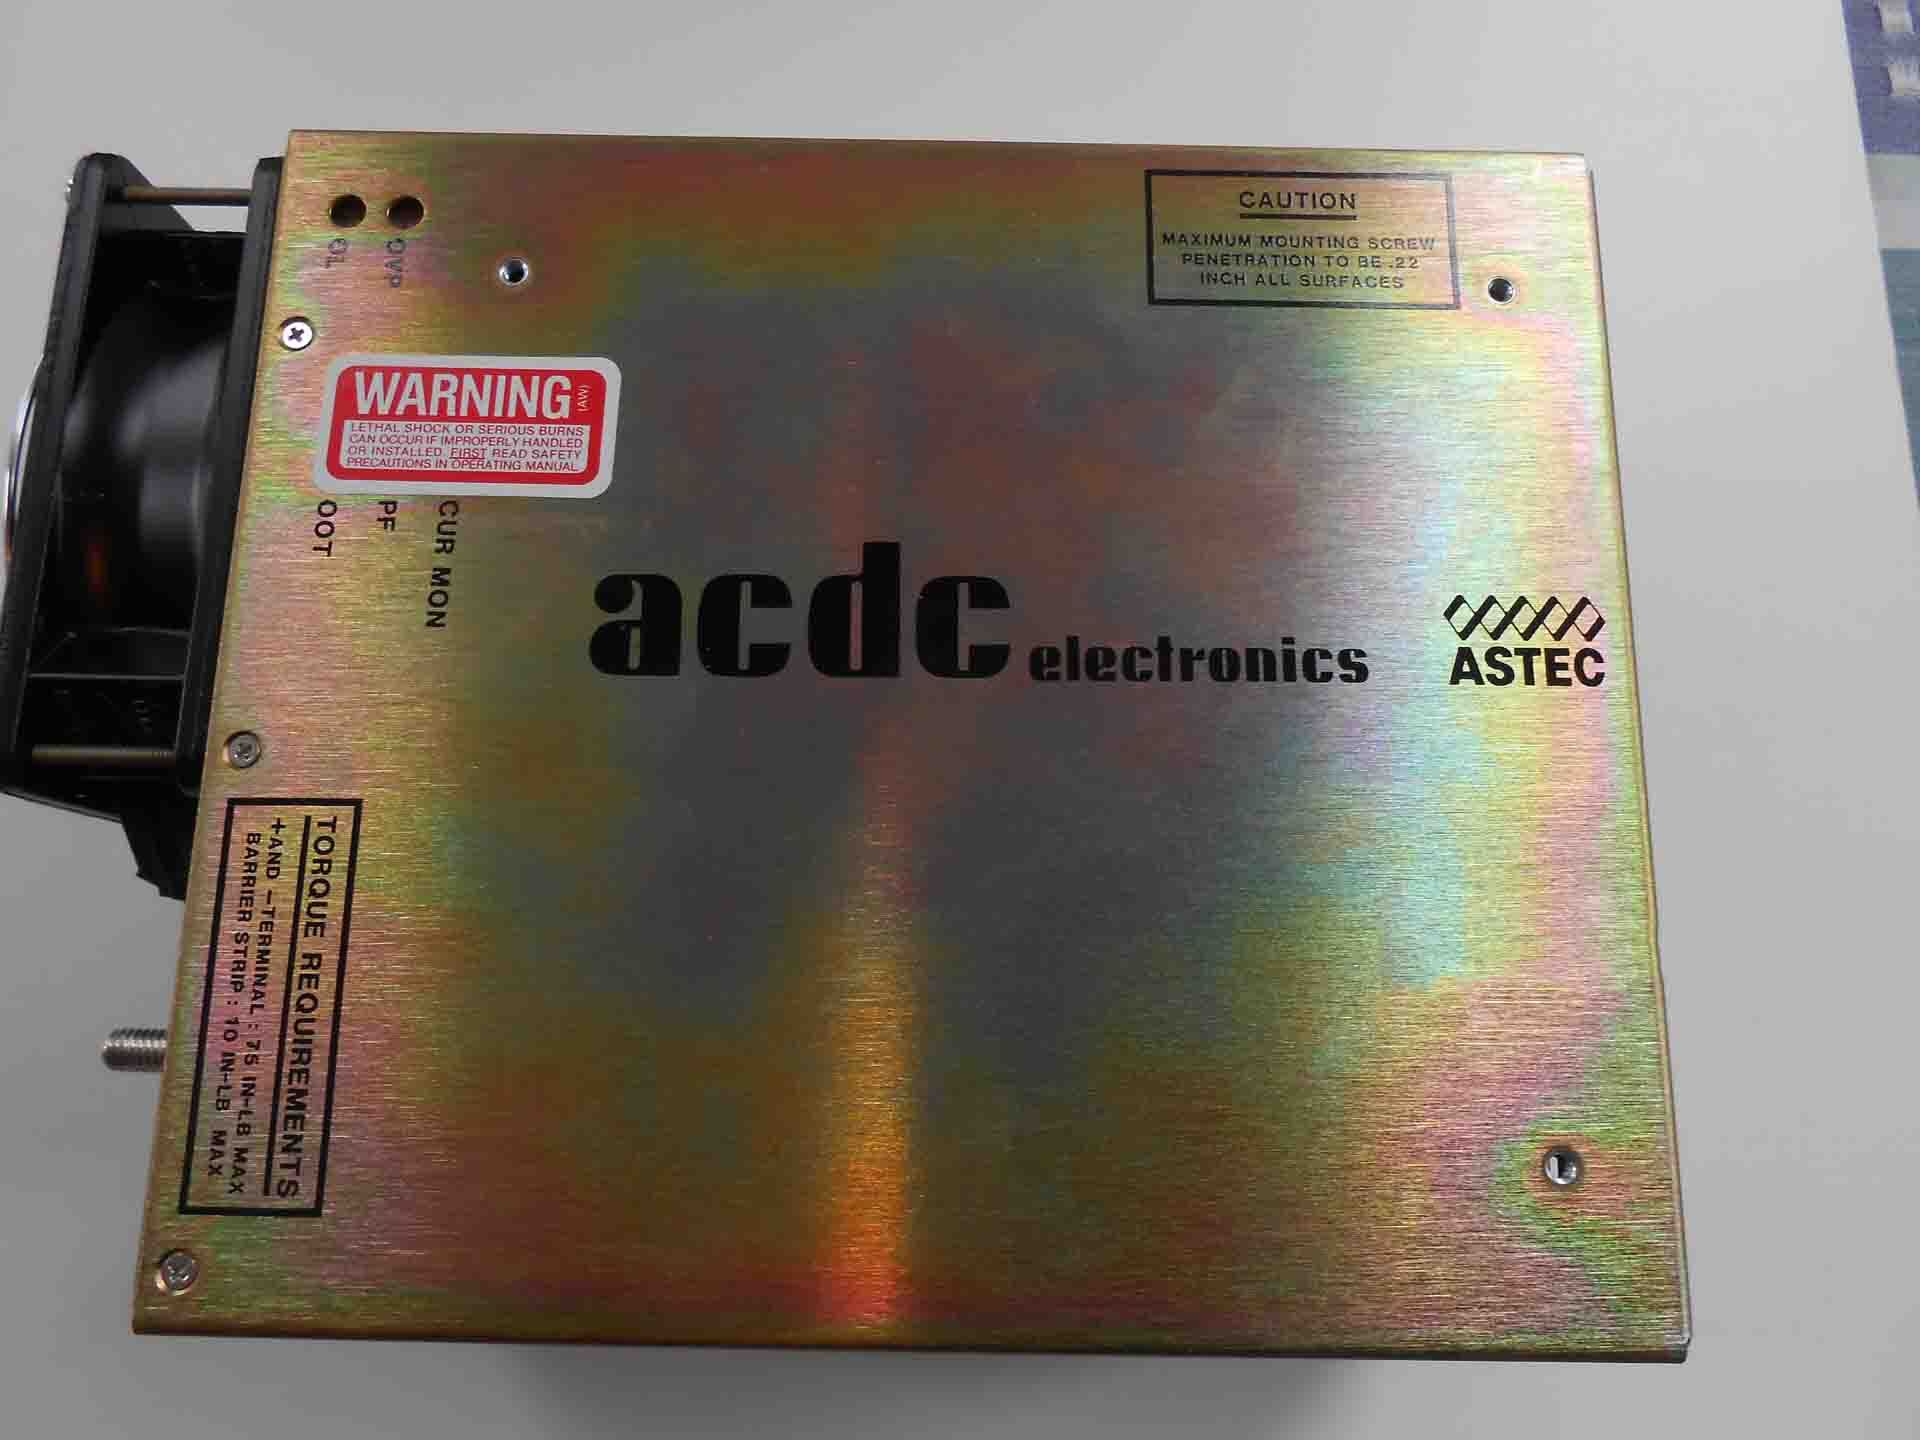 Foto Verwendet ACDC ELECTRONICS JF751A-9000-9066 Zum Verkauf